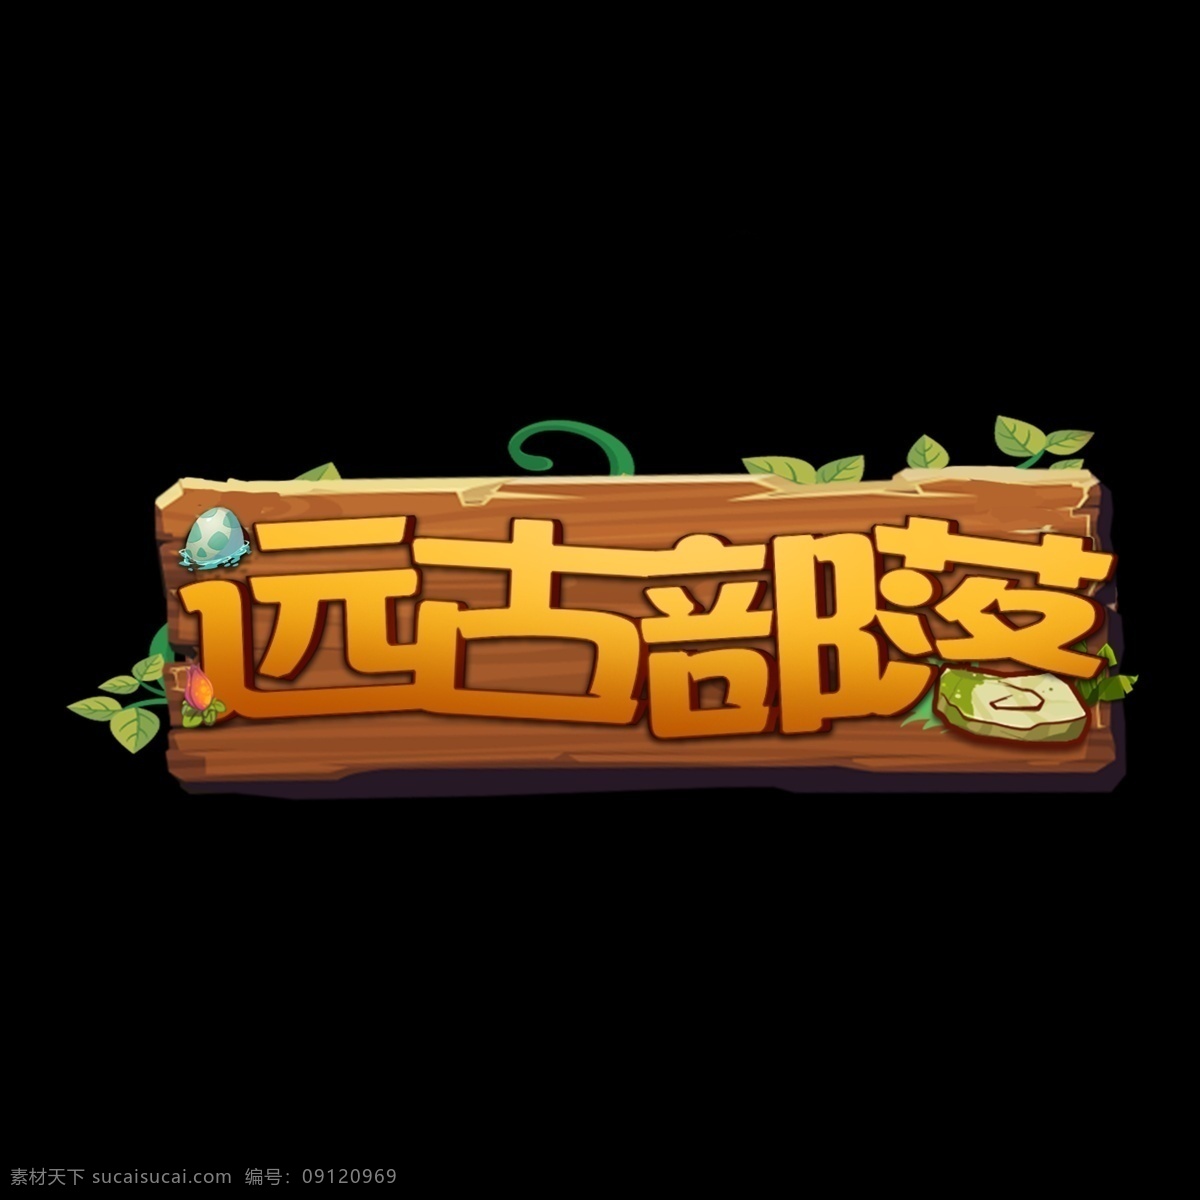 游戏 风 logo 远古 部落 游戏风 扁平 游戏字体 远古部落 艺术字